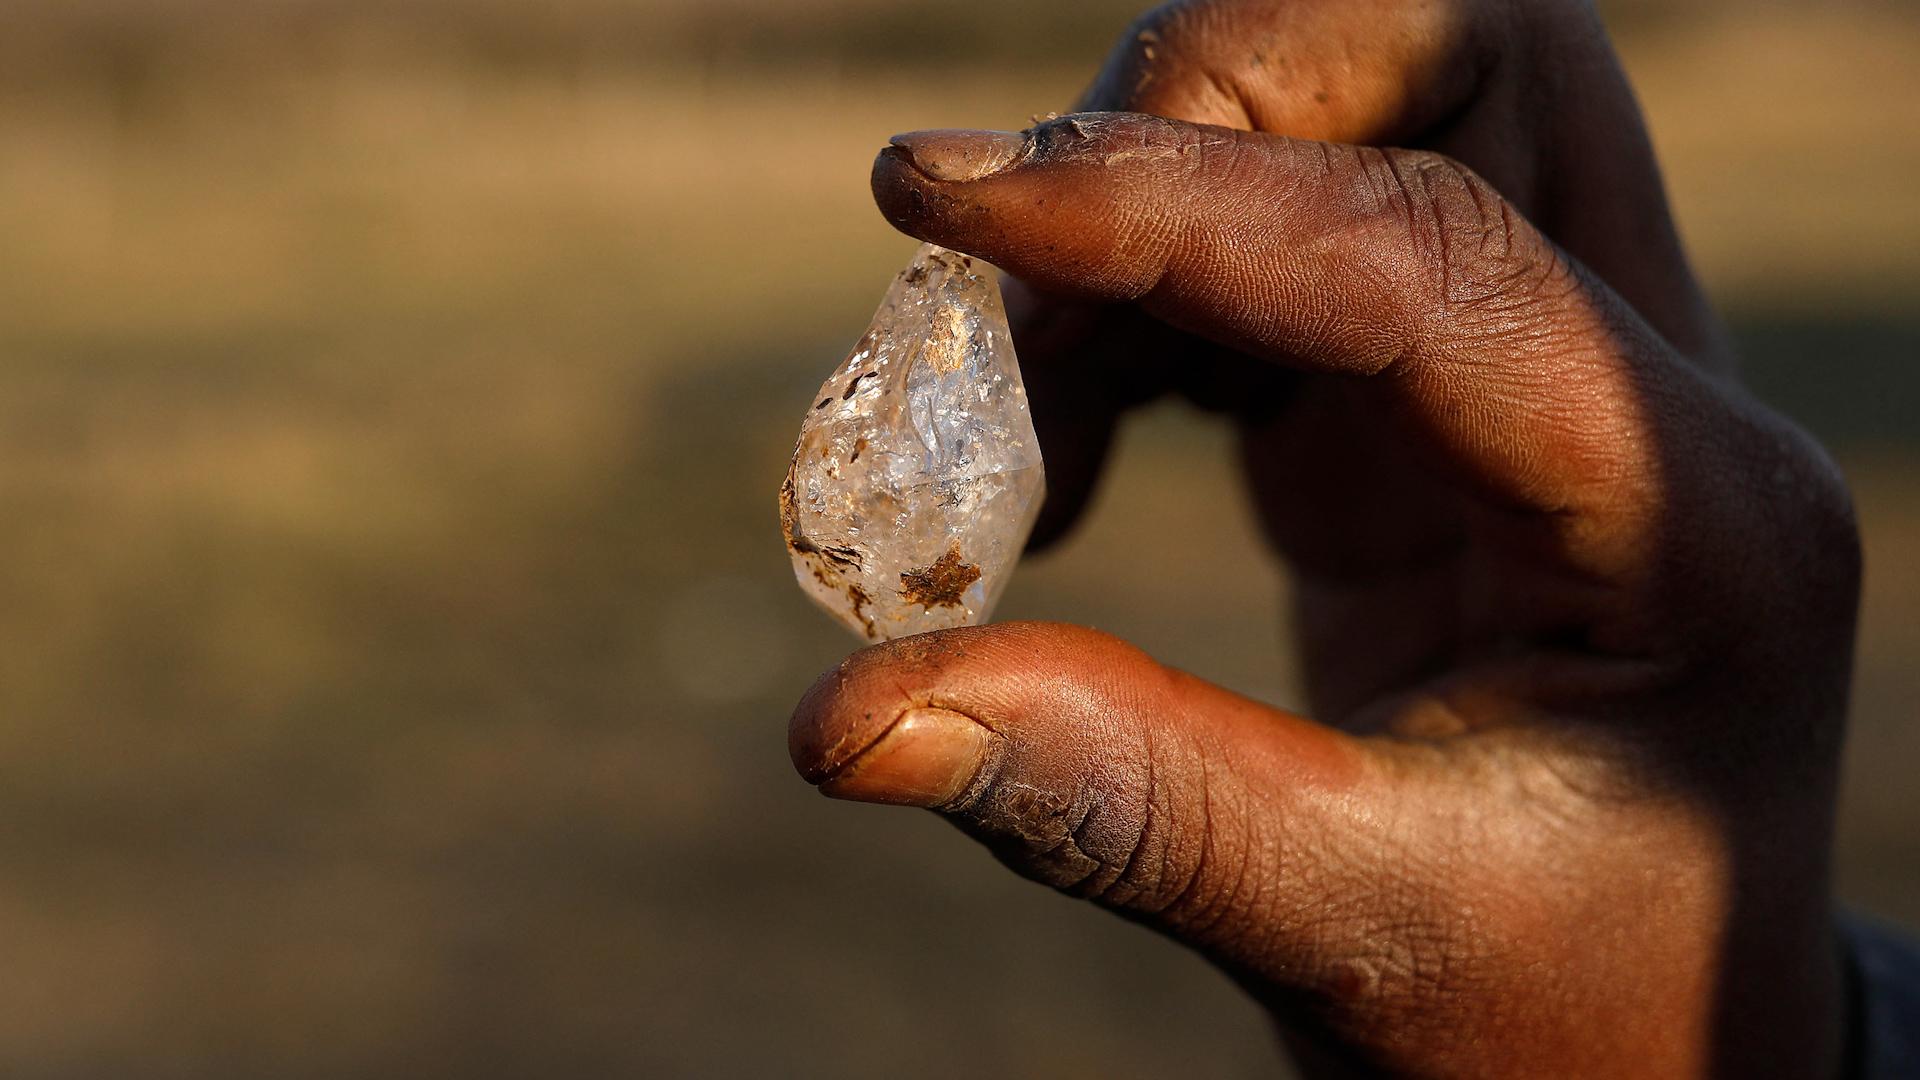 Les diamants, que le principal suspect dit avoir achetés « à des rebelles au Cameroun », ne sont jamais arrivés dans les mains de la victime. (Illustration) AFP